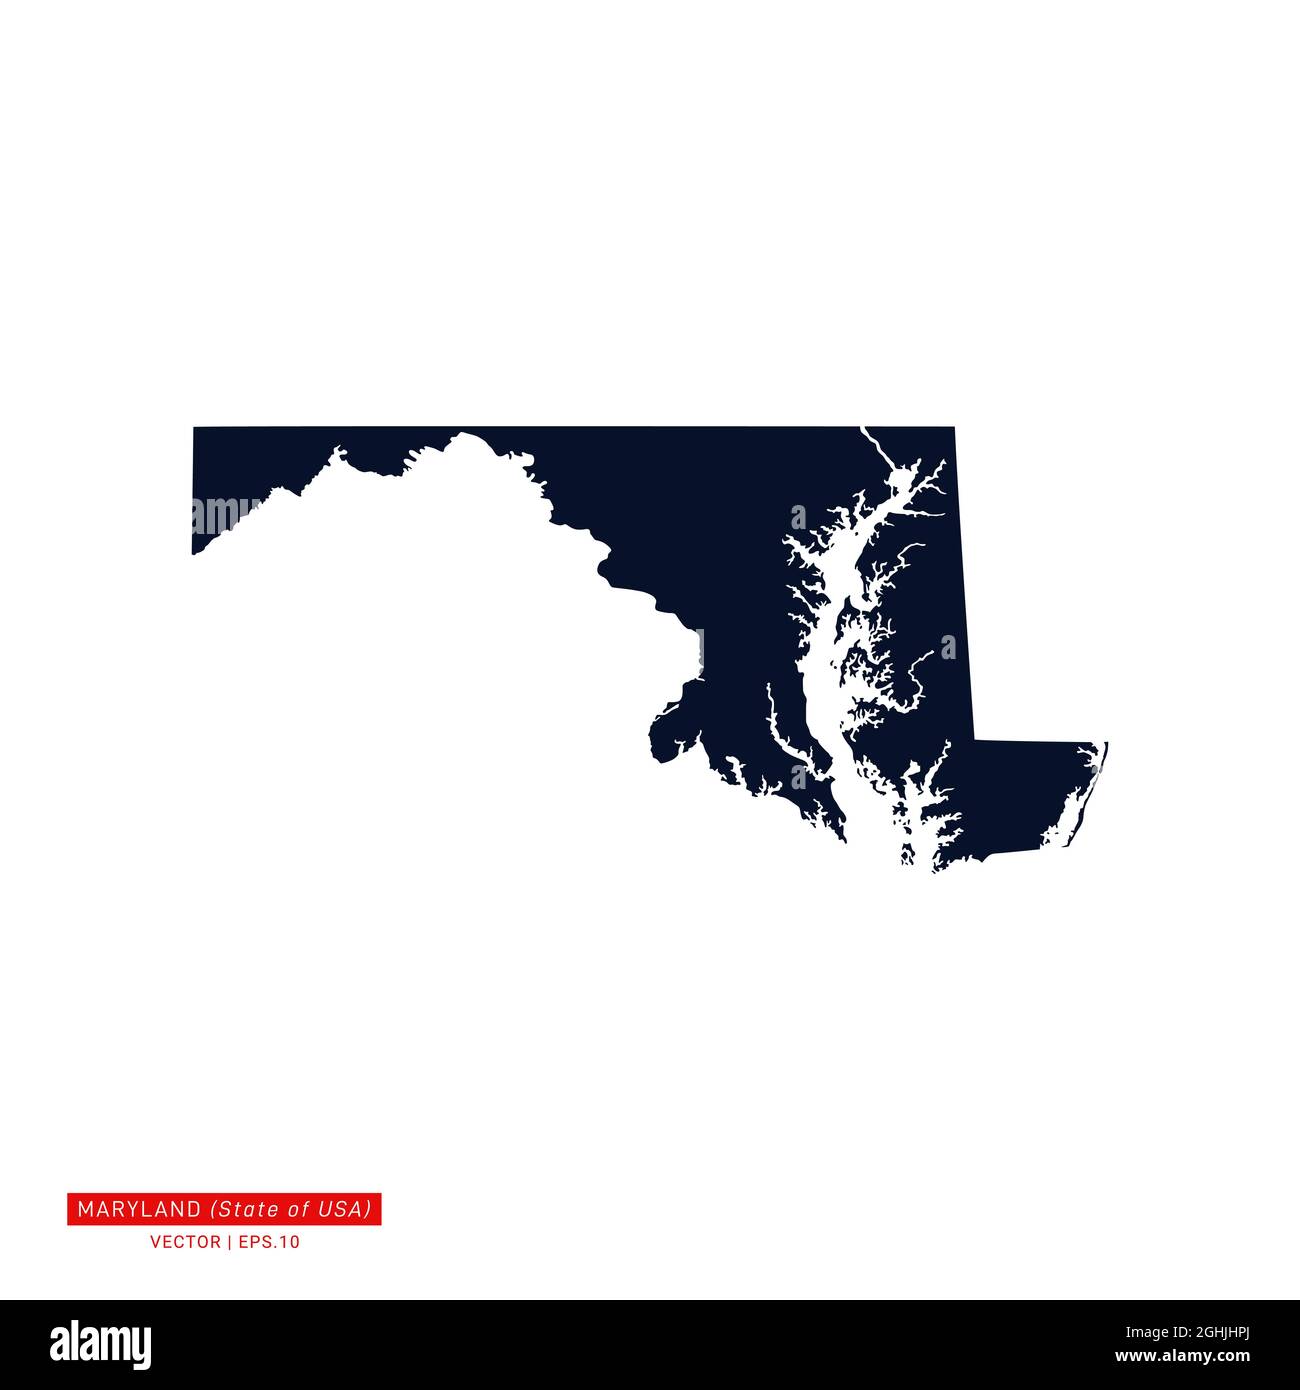 Maryland (USA) Mappa vettore Stock Illustrazione modello di disegno. Vettore eps 10. Illustrazione Vettoriale